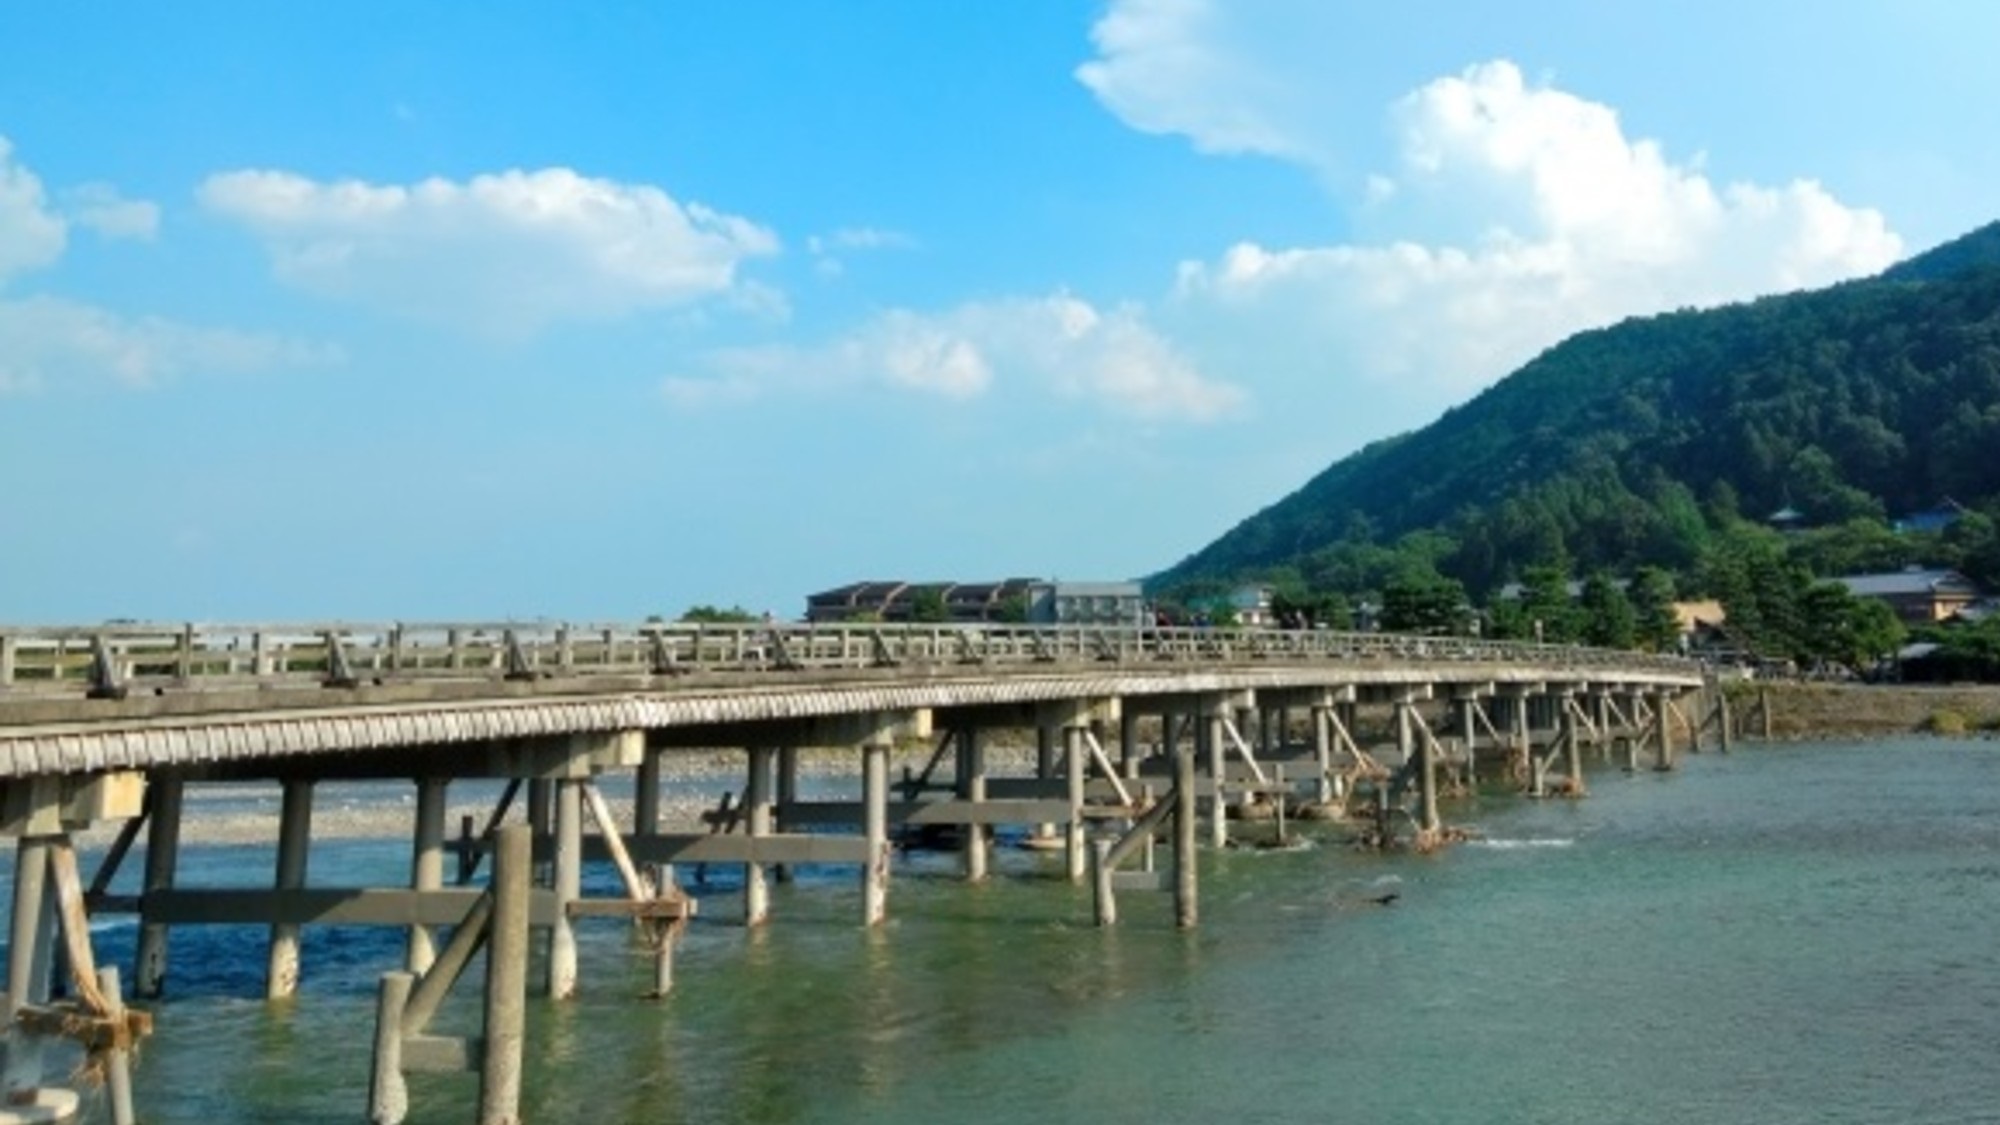 【嵐山】渡月橋は四季折々の姿を見せてくれる魅力があり、葛飾北斎の浮世絵でも知られる